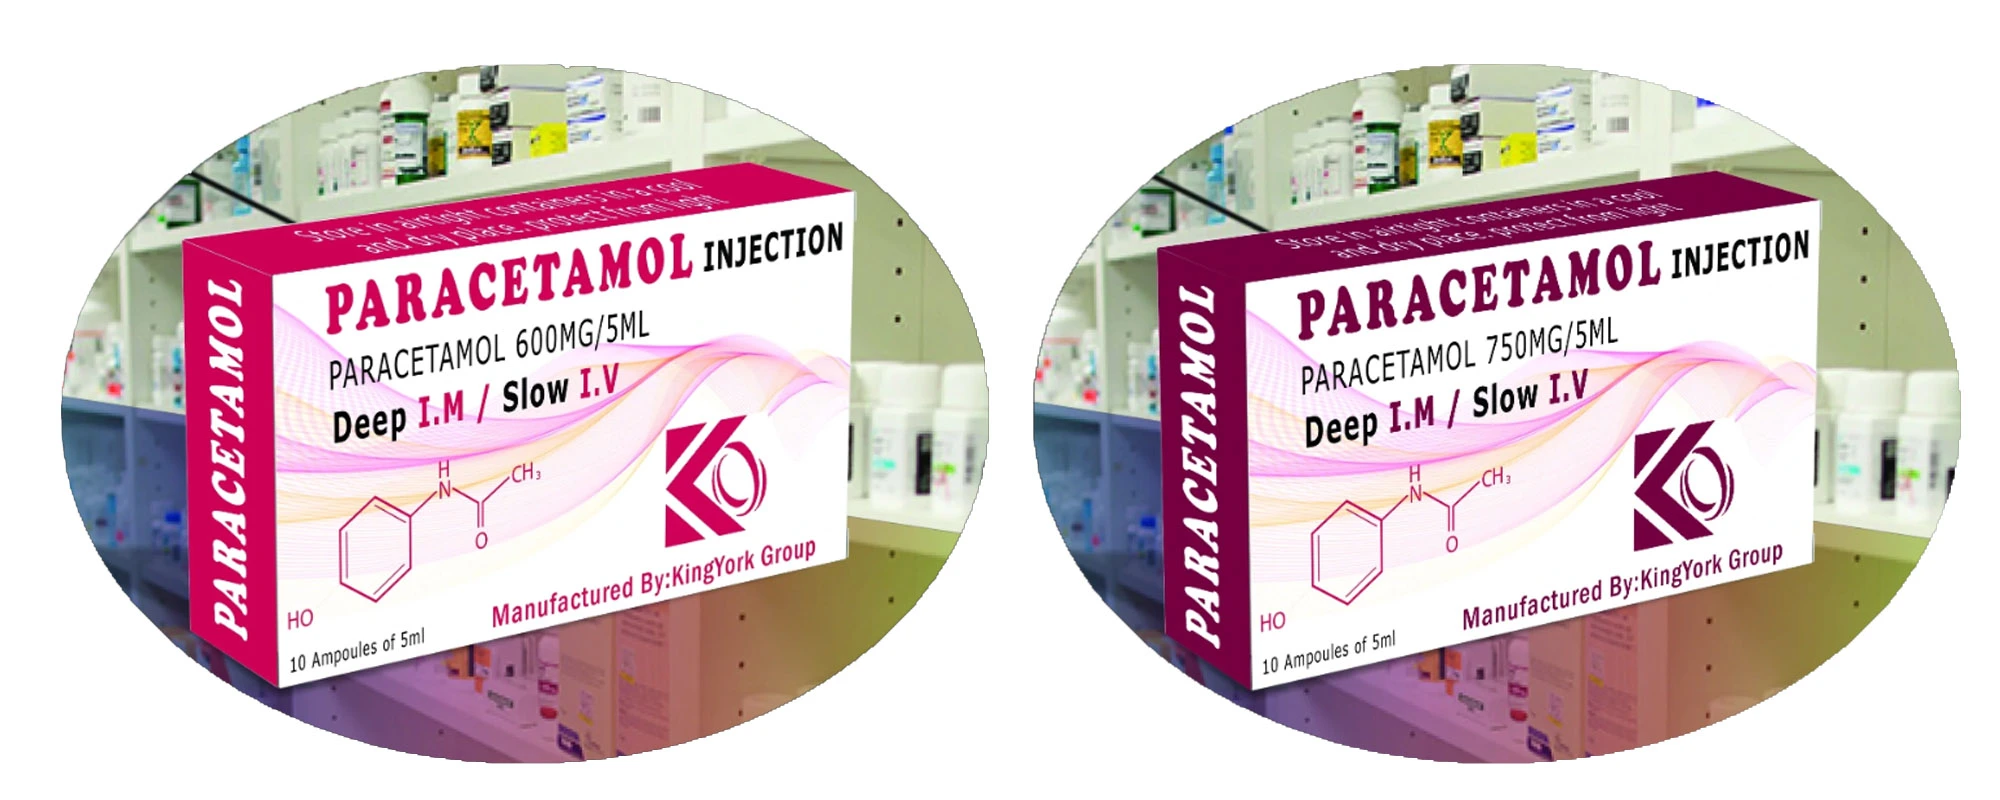 'Paracetamol injection 600mg', 'Paracetamol injection', 'Paracetamol'